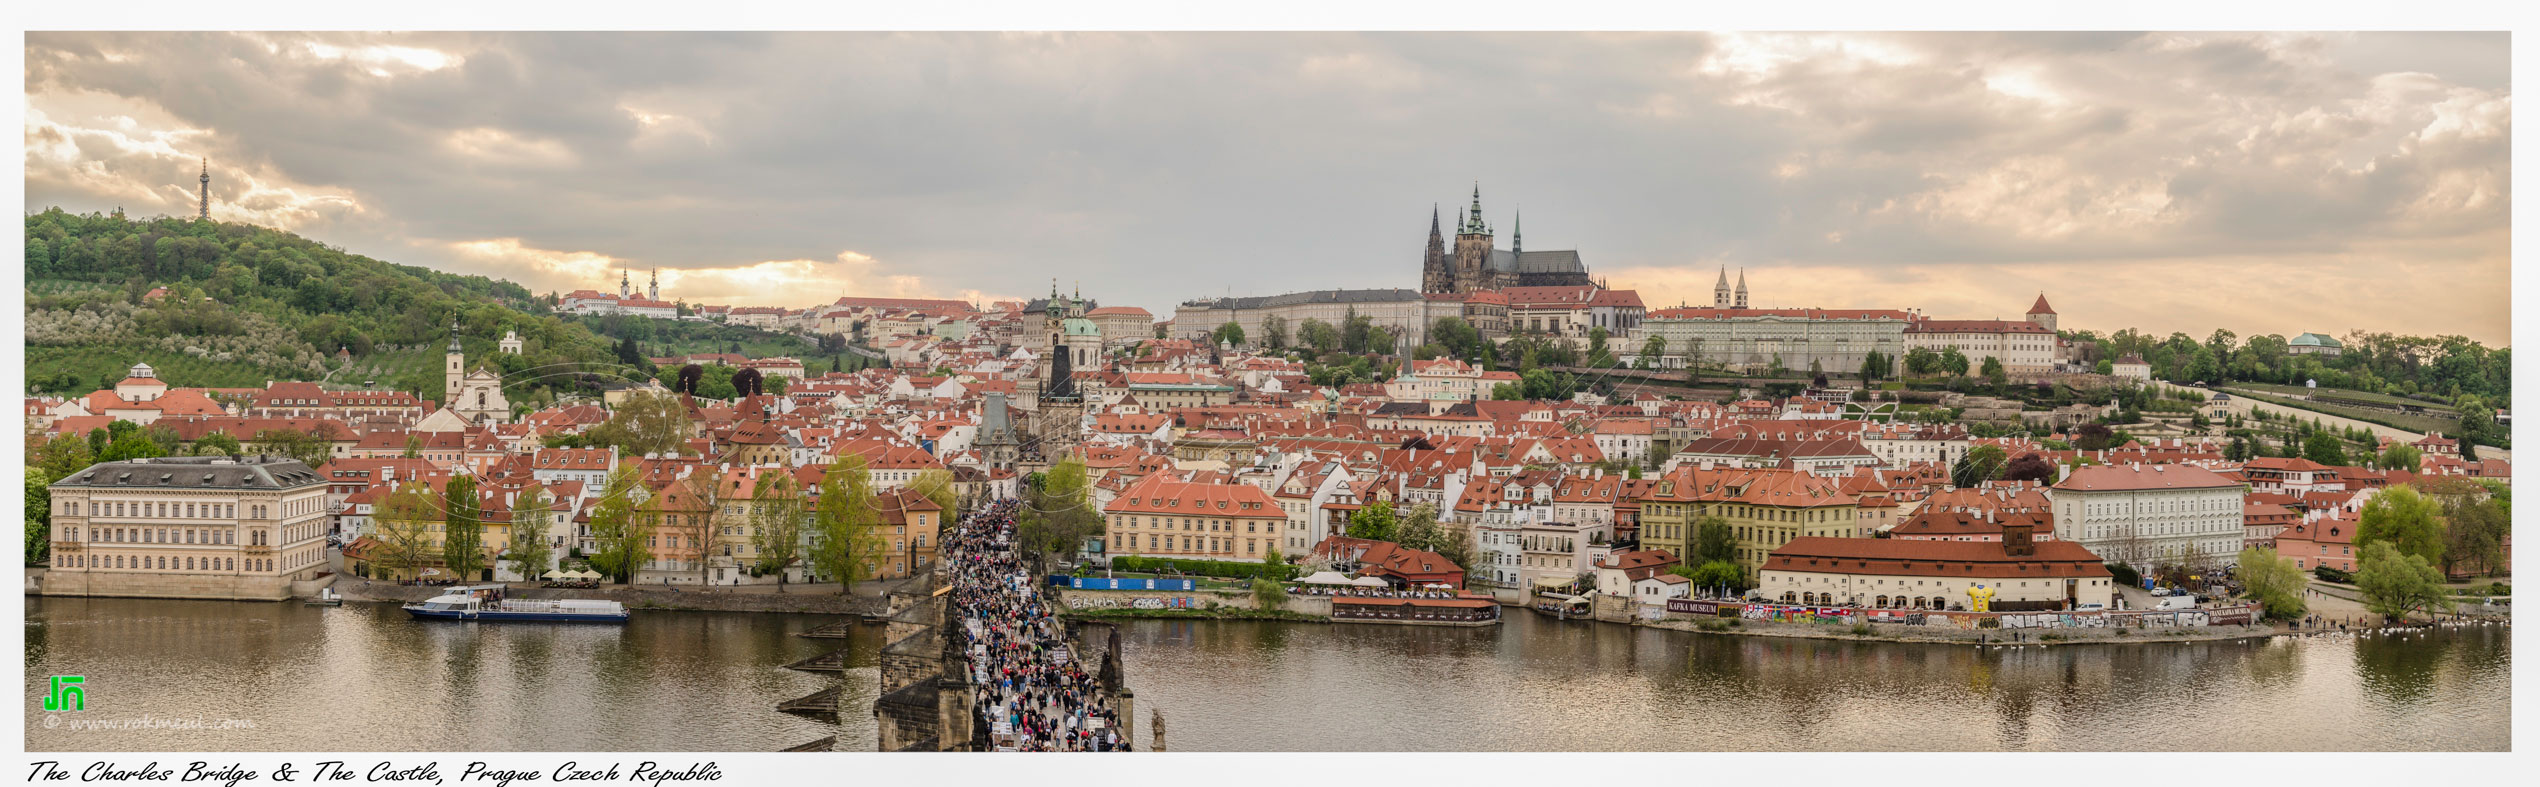 Prague, The Magical City